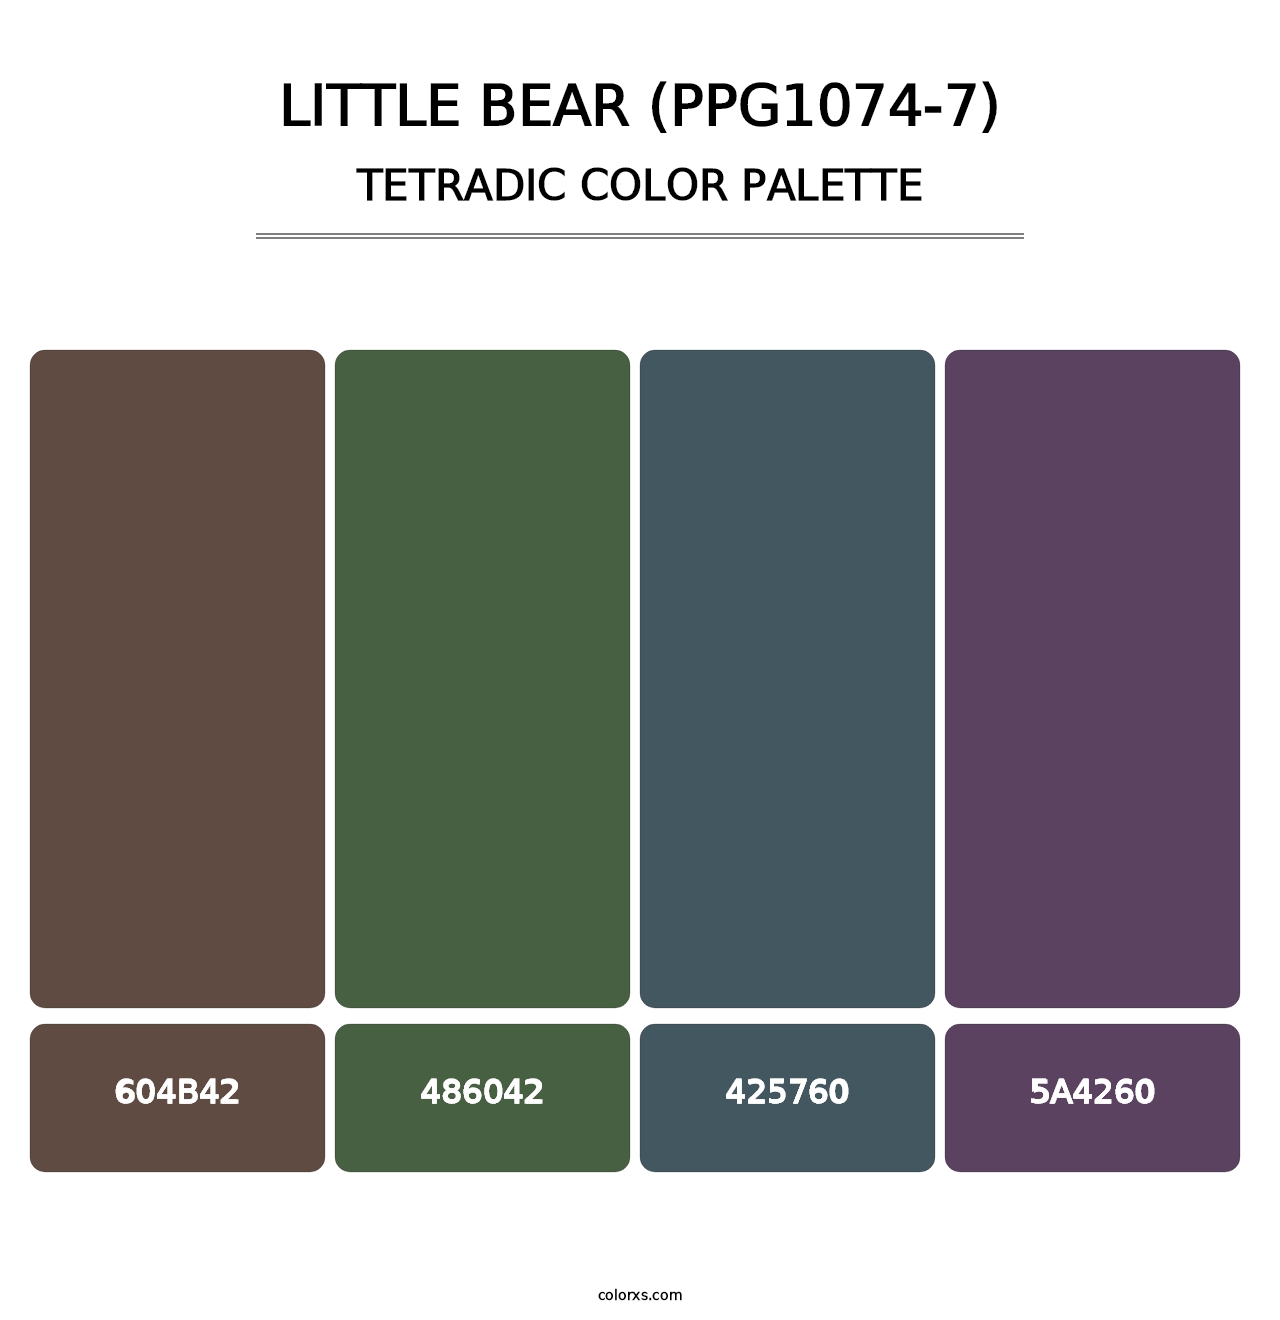 Little Bear (PPG1074-7) - Tetradic Color Palette